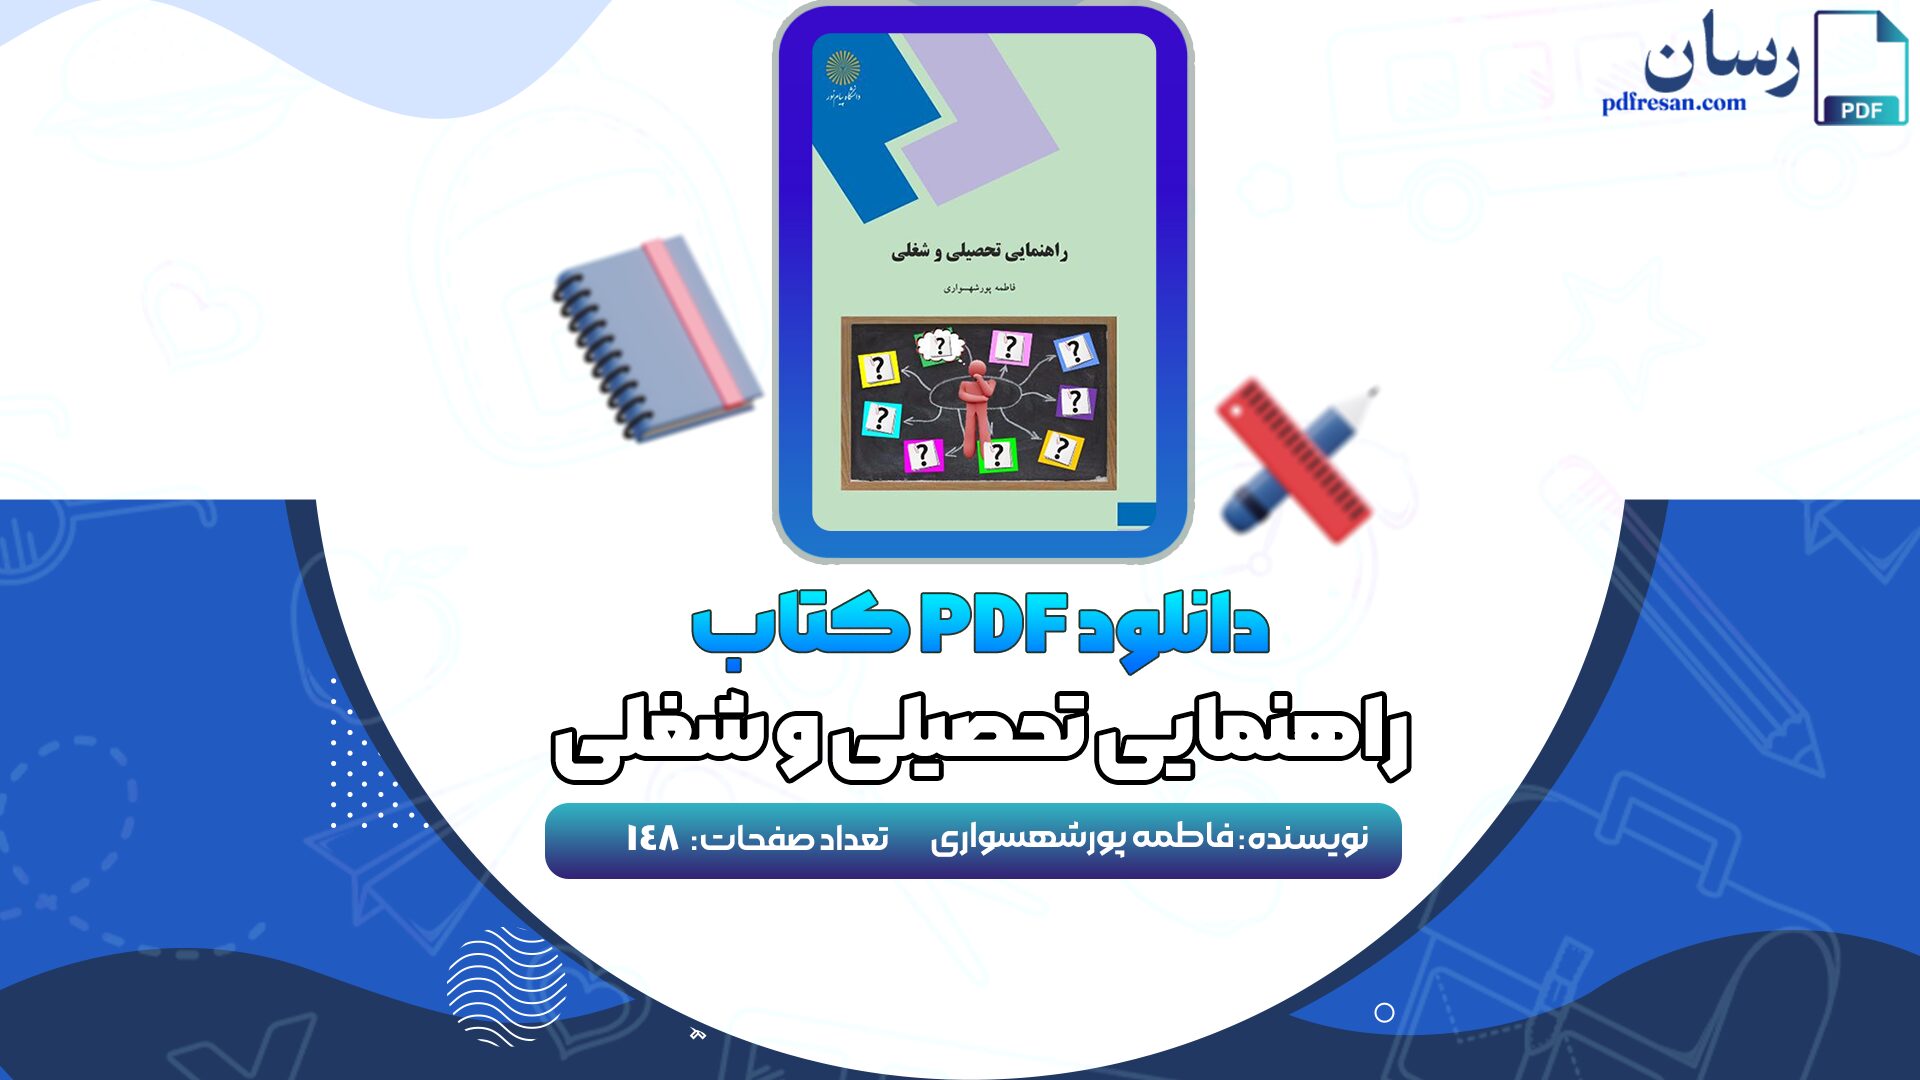 دانلود پی دی اف کتاب راهنمایی تحصیلی و شغلی فاطمه پورشهسواری PDF + قابل سرچ